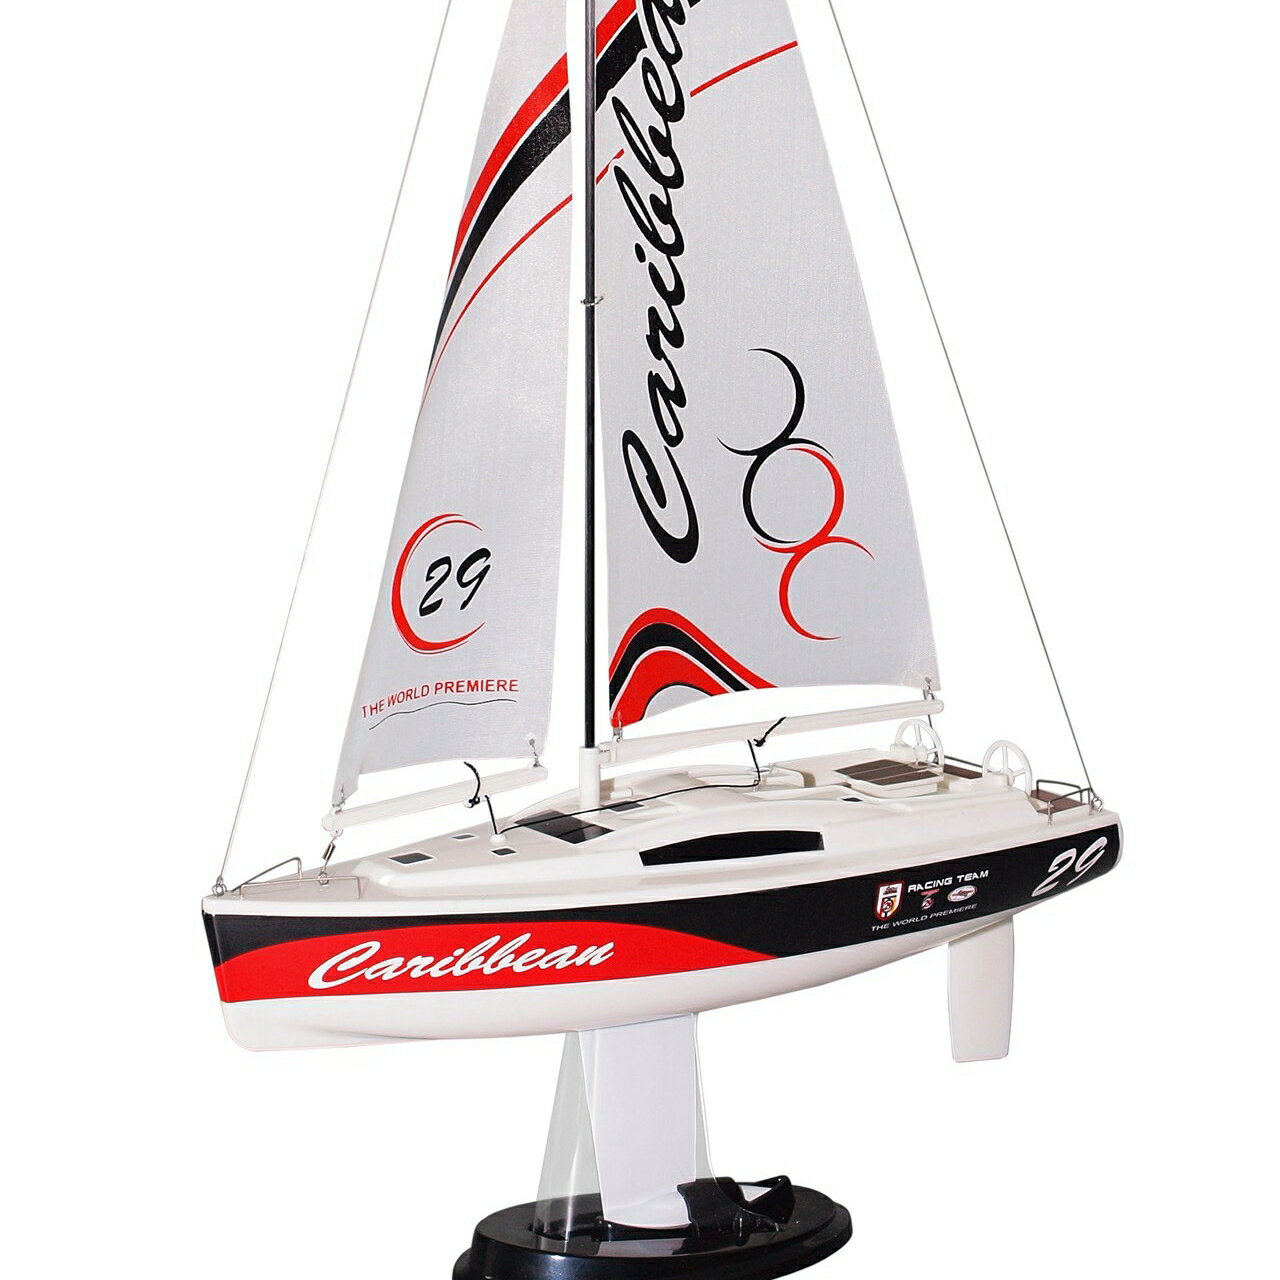 天天樂威豪joysway紅色 加勒比海8802 2.4G比例搖控帆船模型 現貨